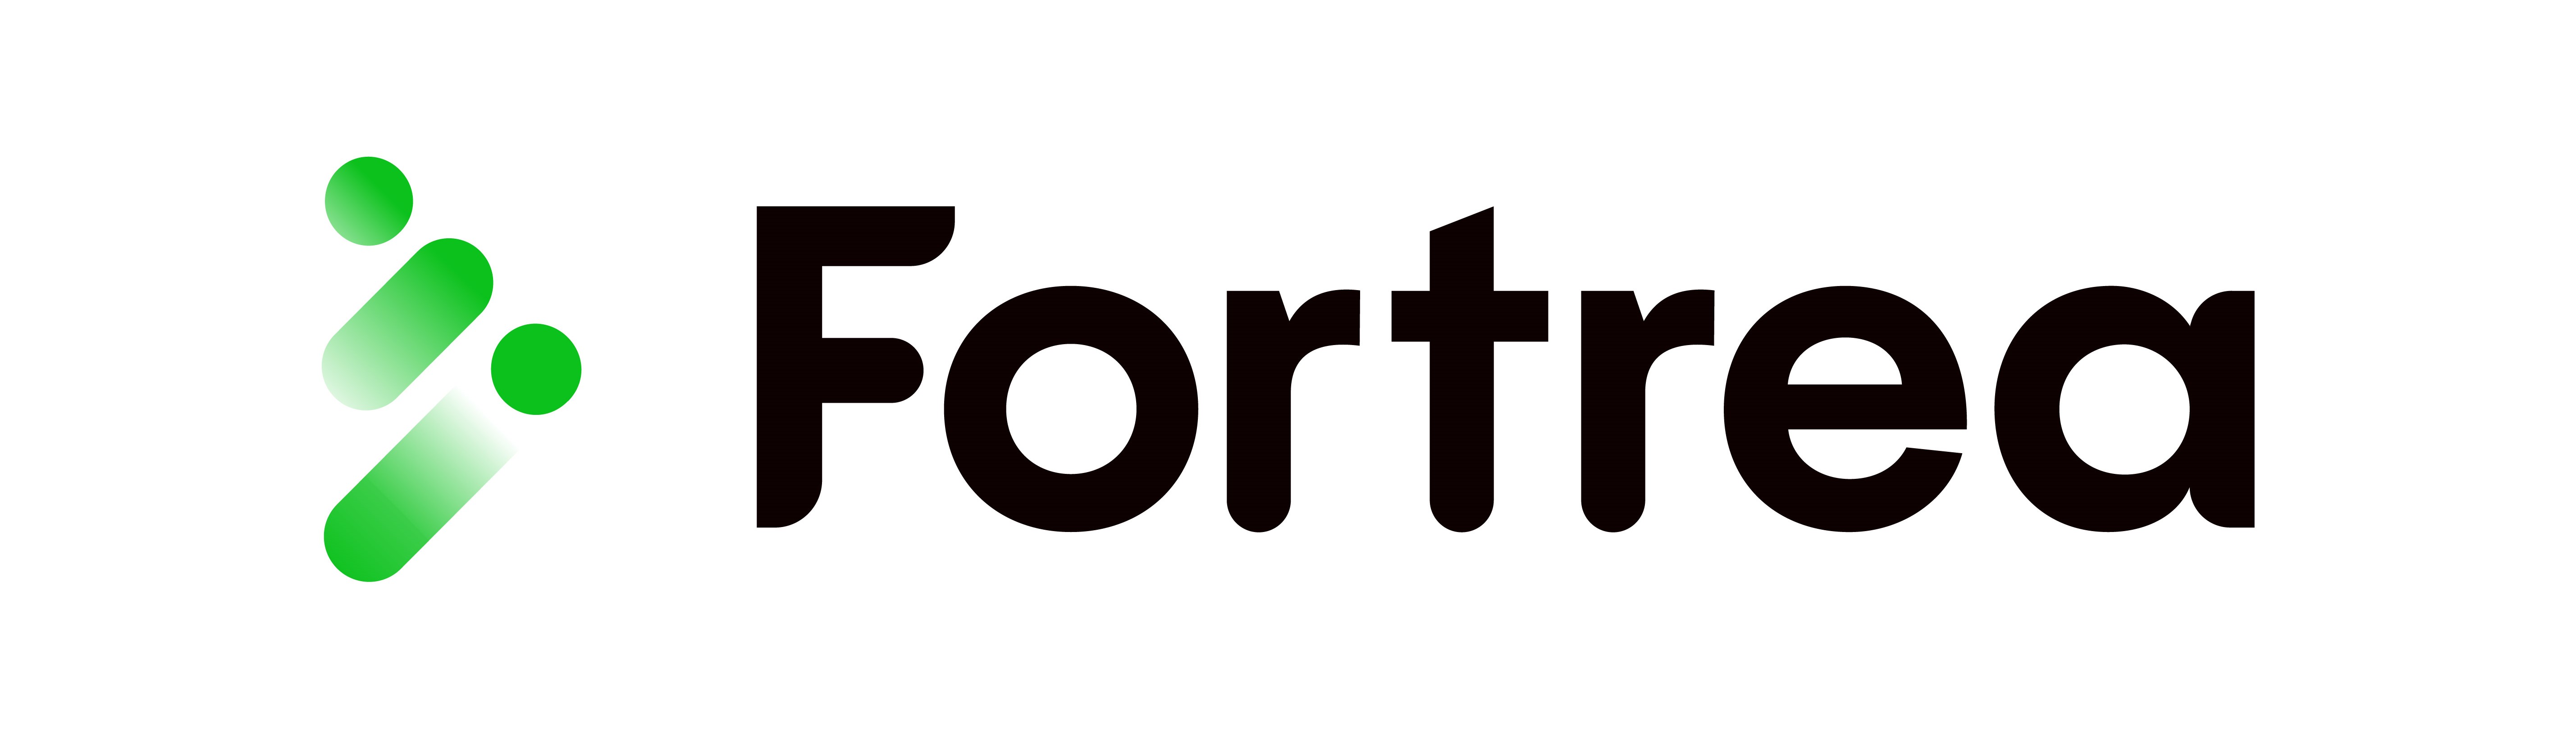 fortrea logo  green-black